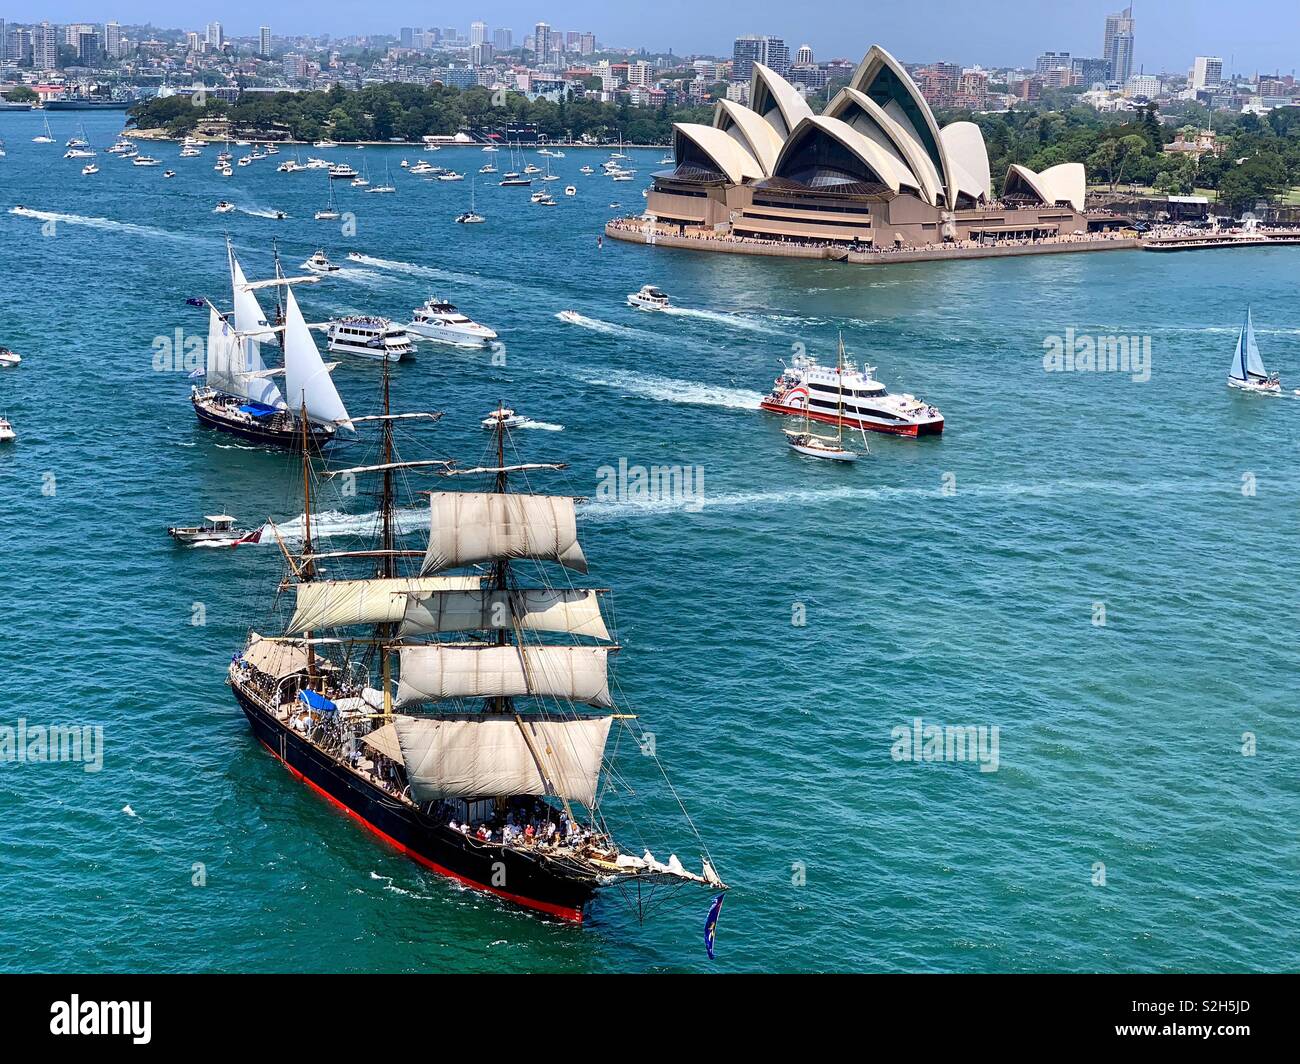 Sydney Harbour, Australia Day, 2019. Stock Photo